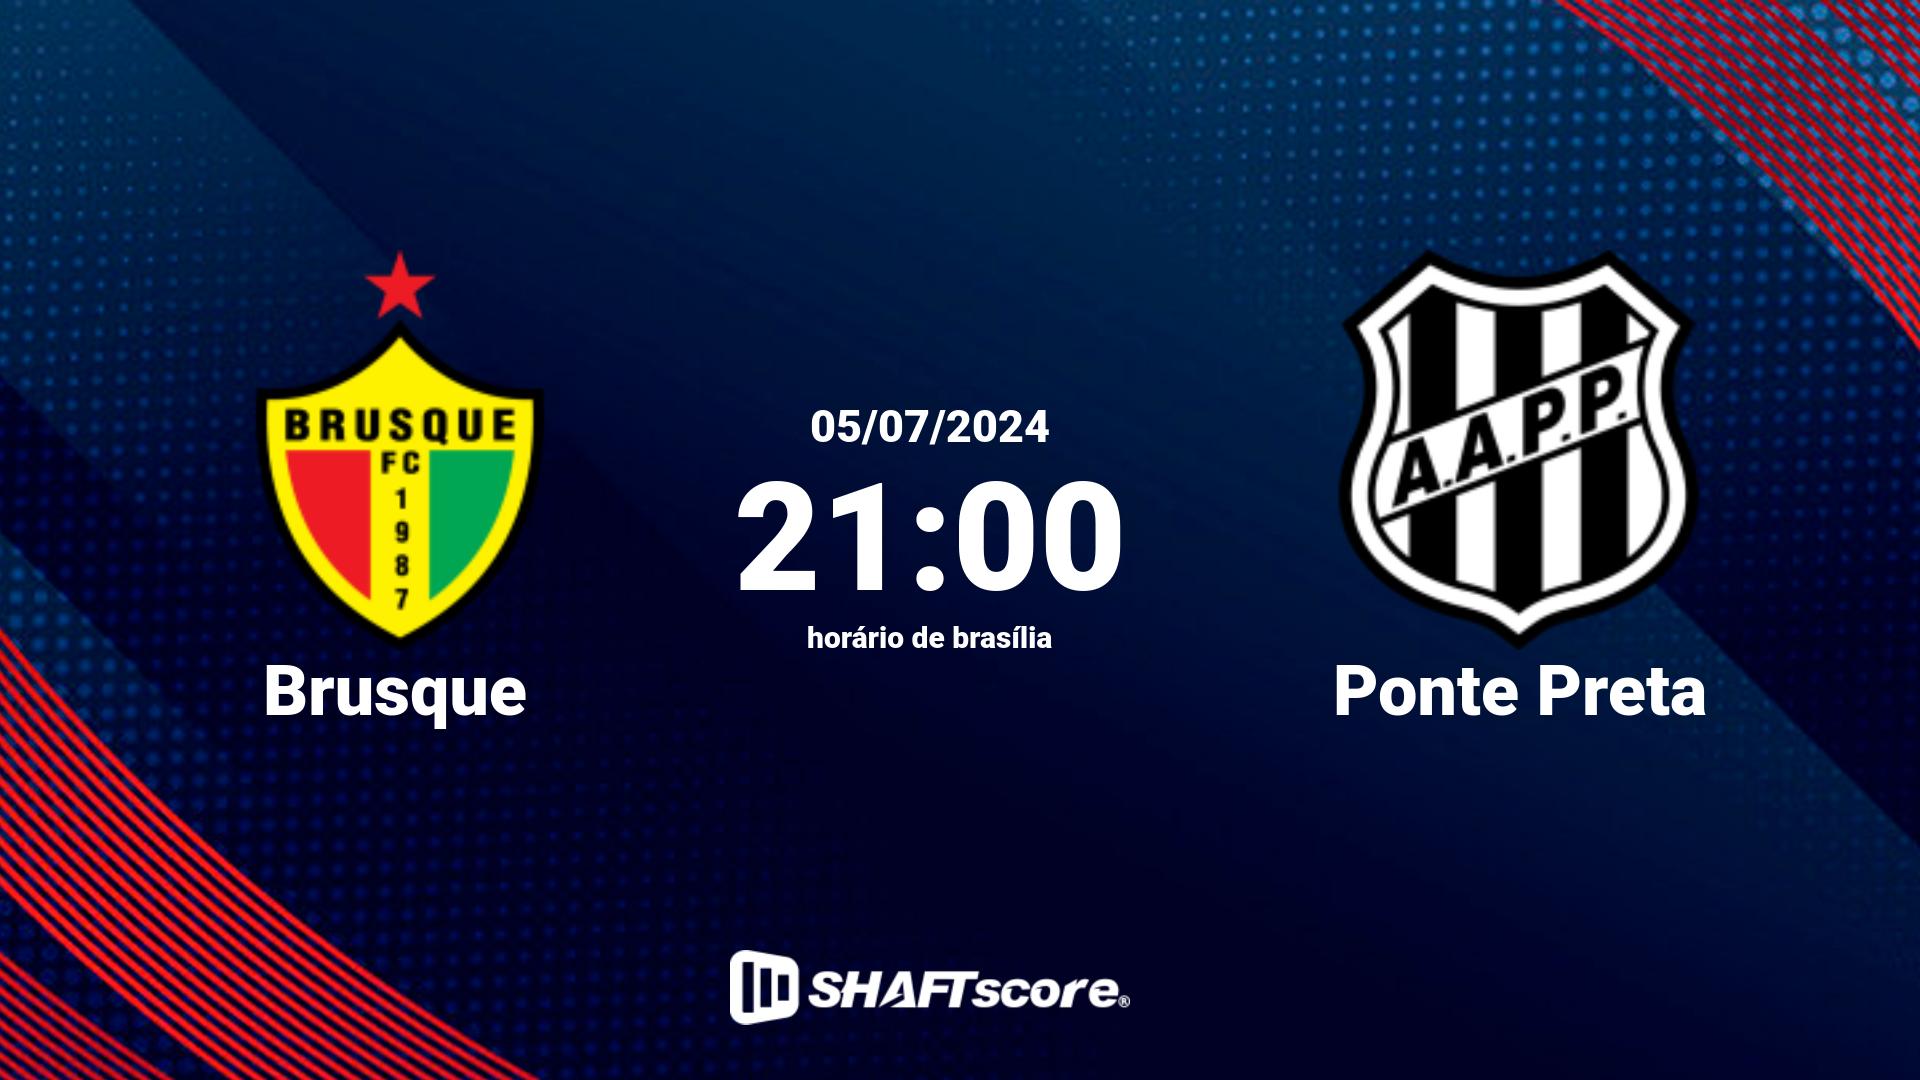 Estatísticas do jogo Brusque vs Ponte Preta 05.07 21:00